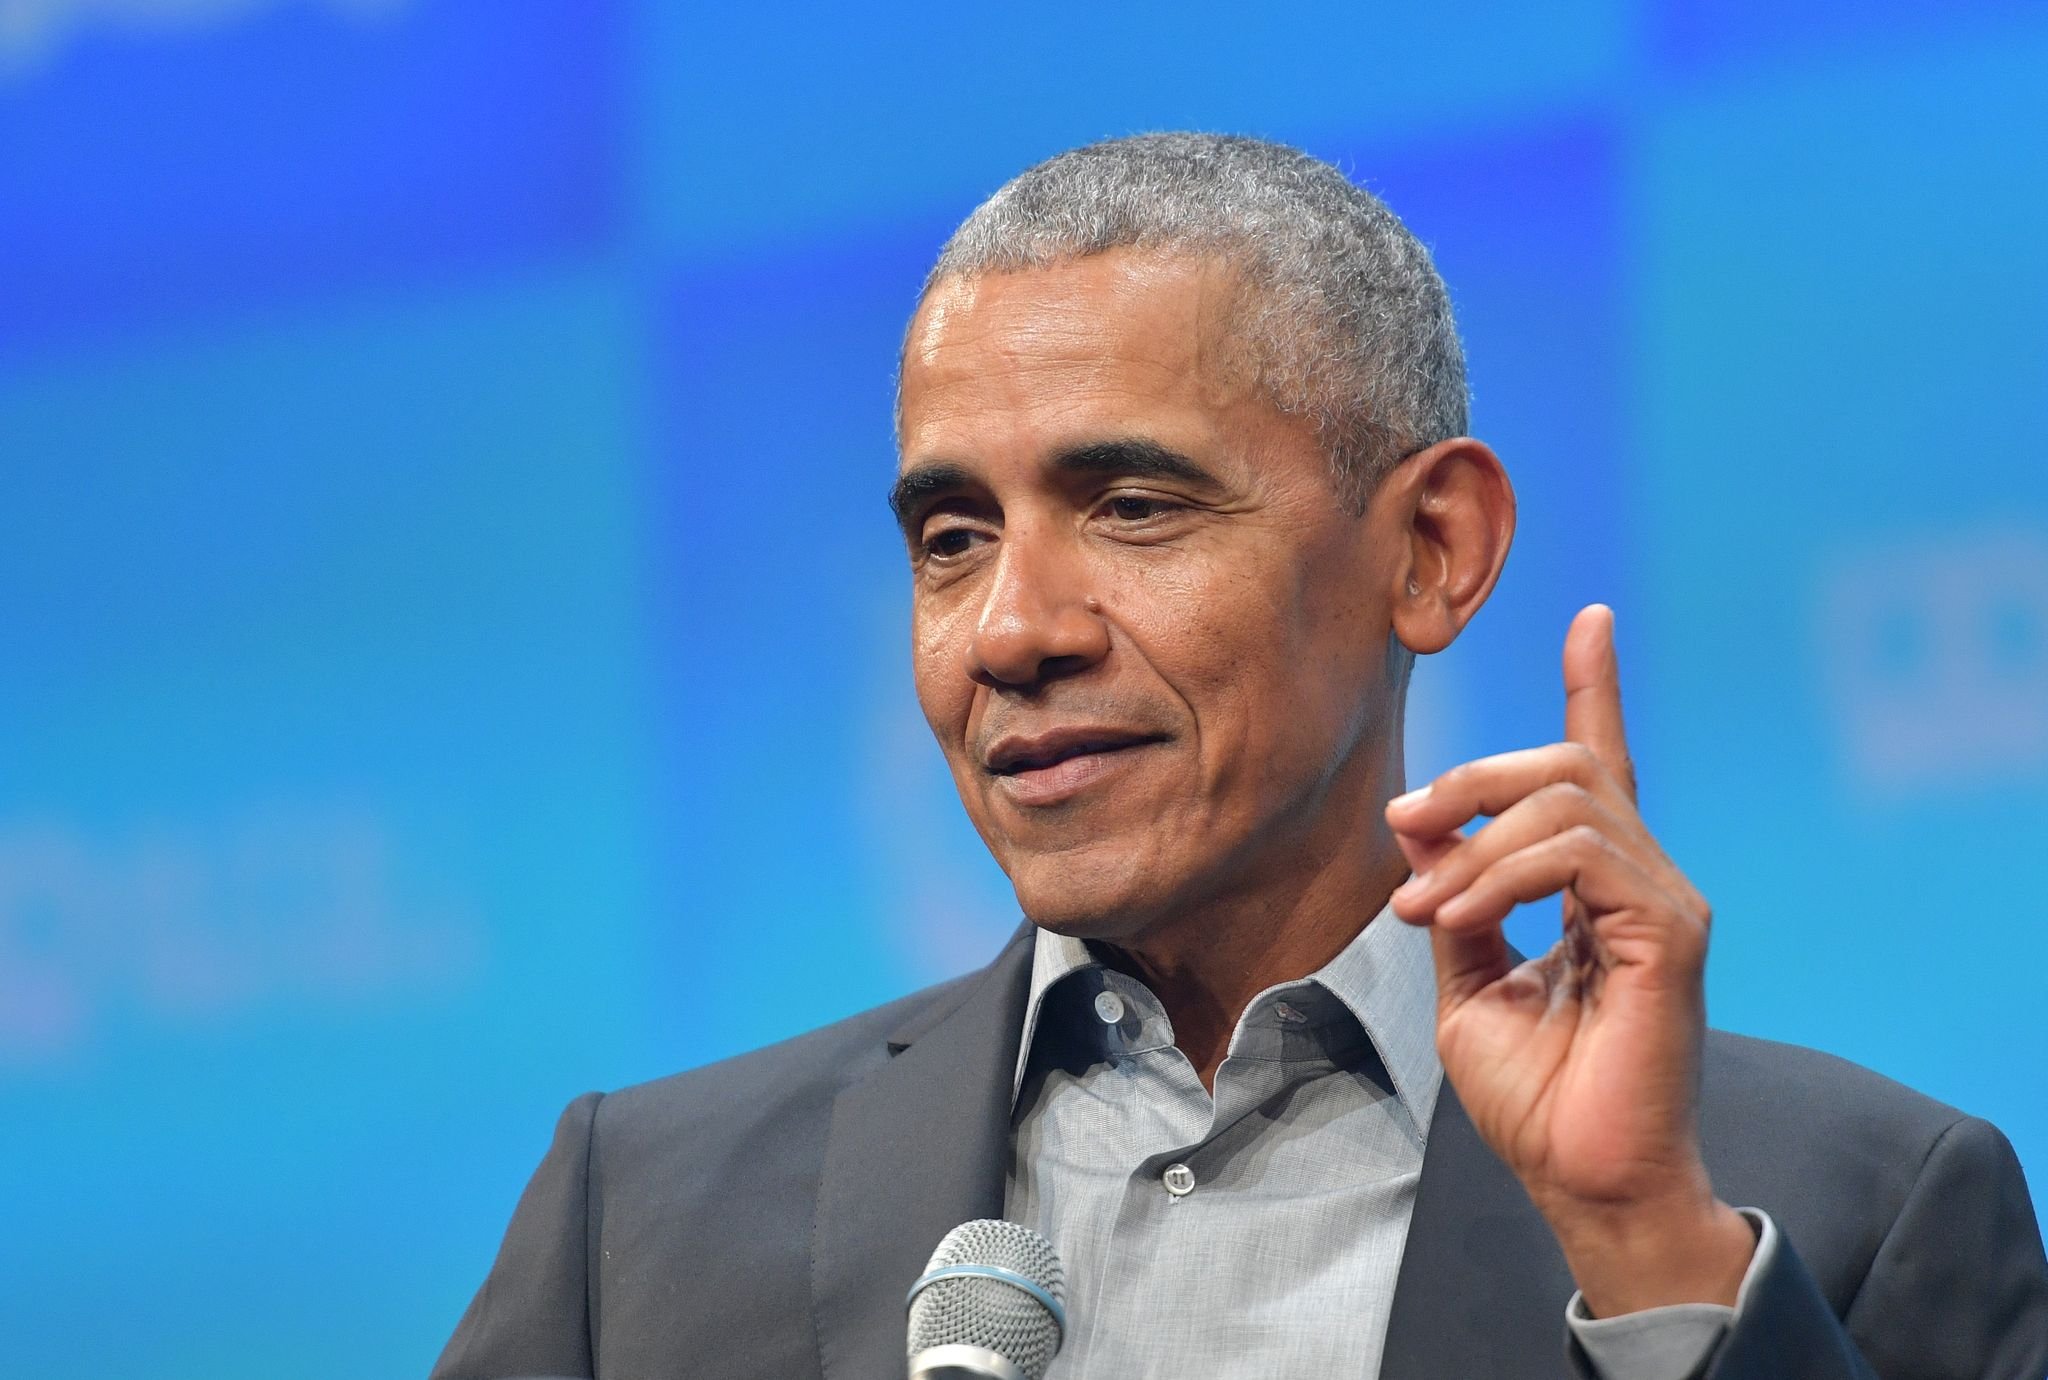 Ο Μπαράκ Ομπάμα κατά την έναρξη της συνάντησης Bits & Pretzels στις 29 Σεπτεμβρίου 2019 στο Μόναχο της Γερμανίας.  |  Πηγή: Getty Images